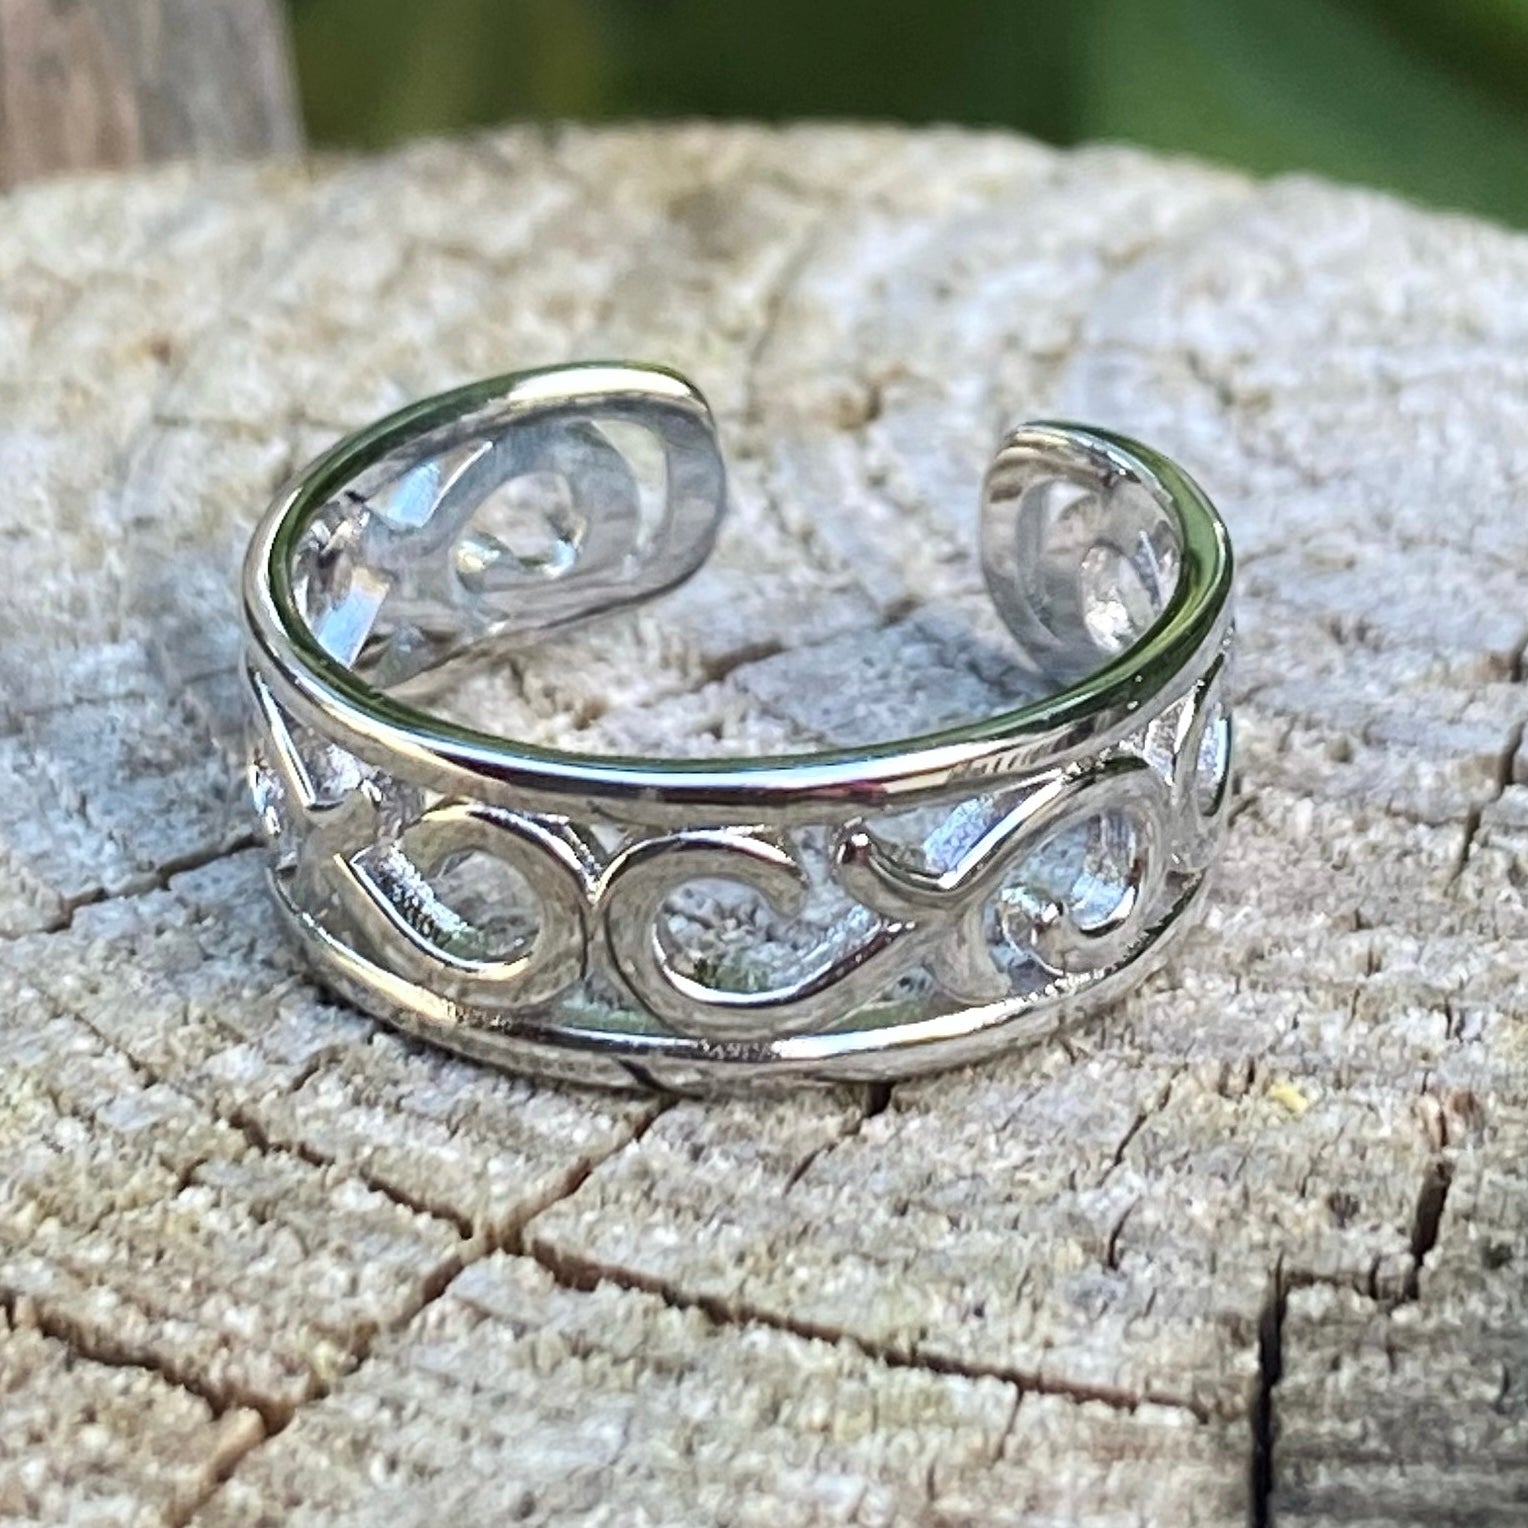 Celtic Flower Ring